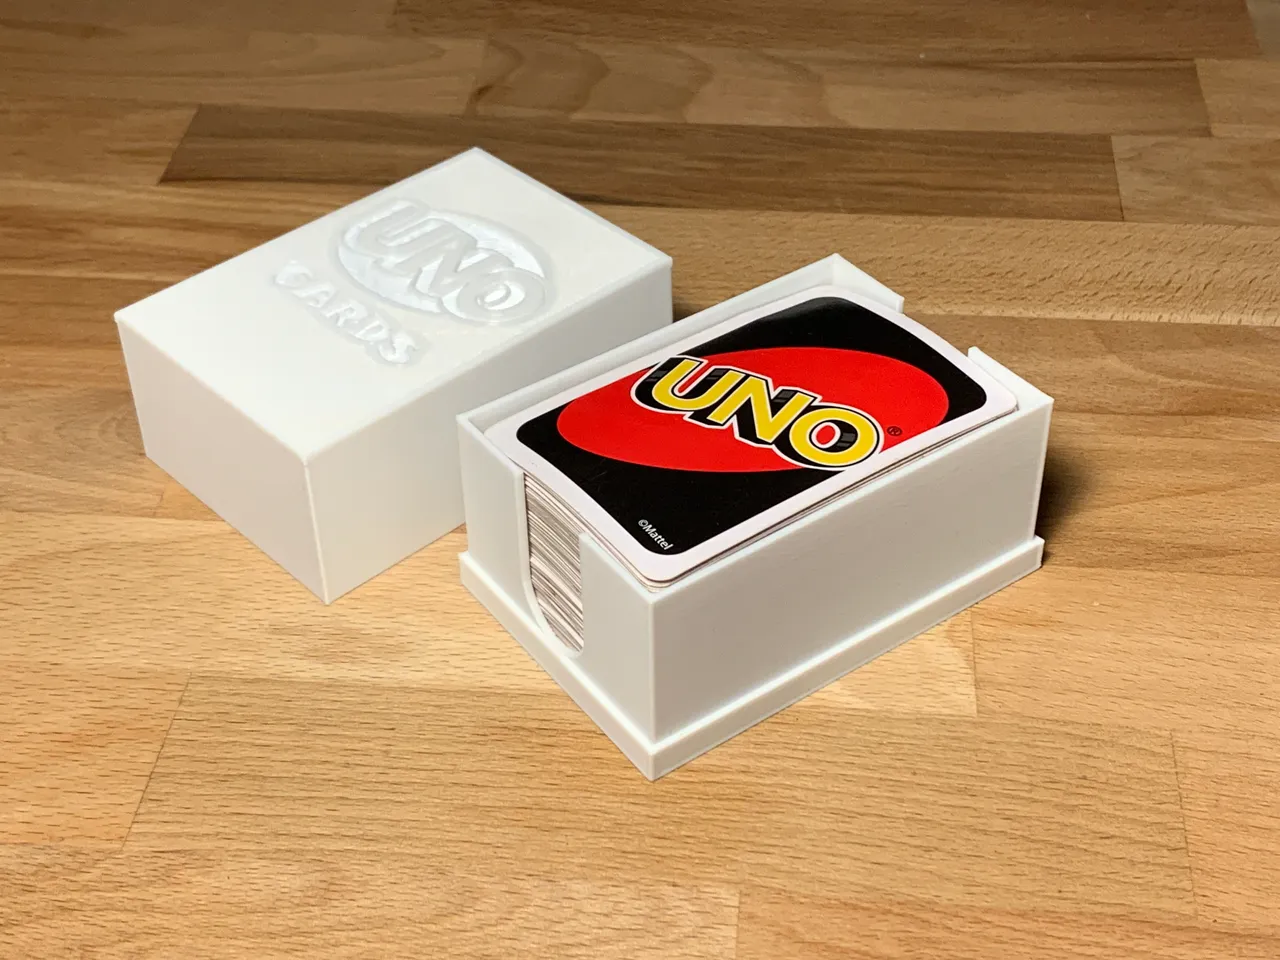 uno cards Modelo 3D